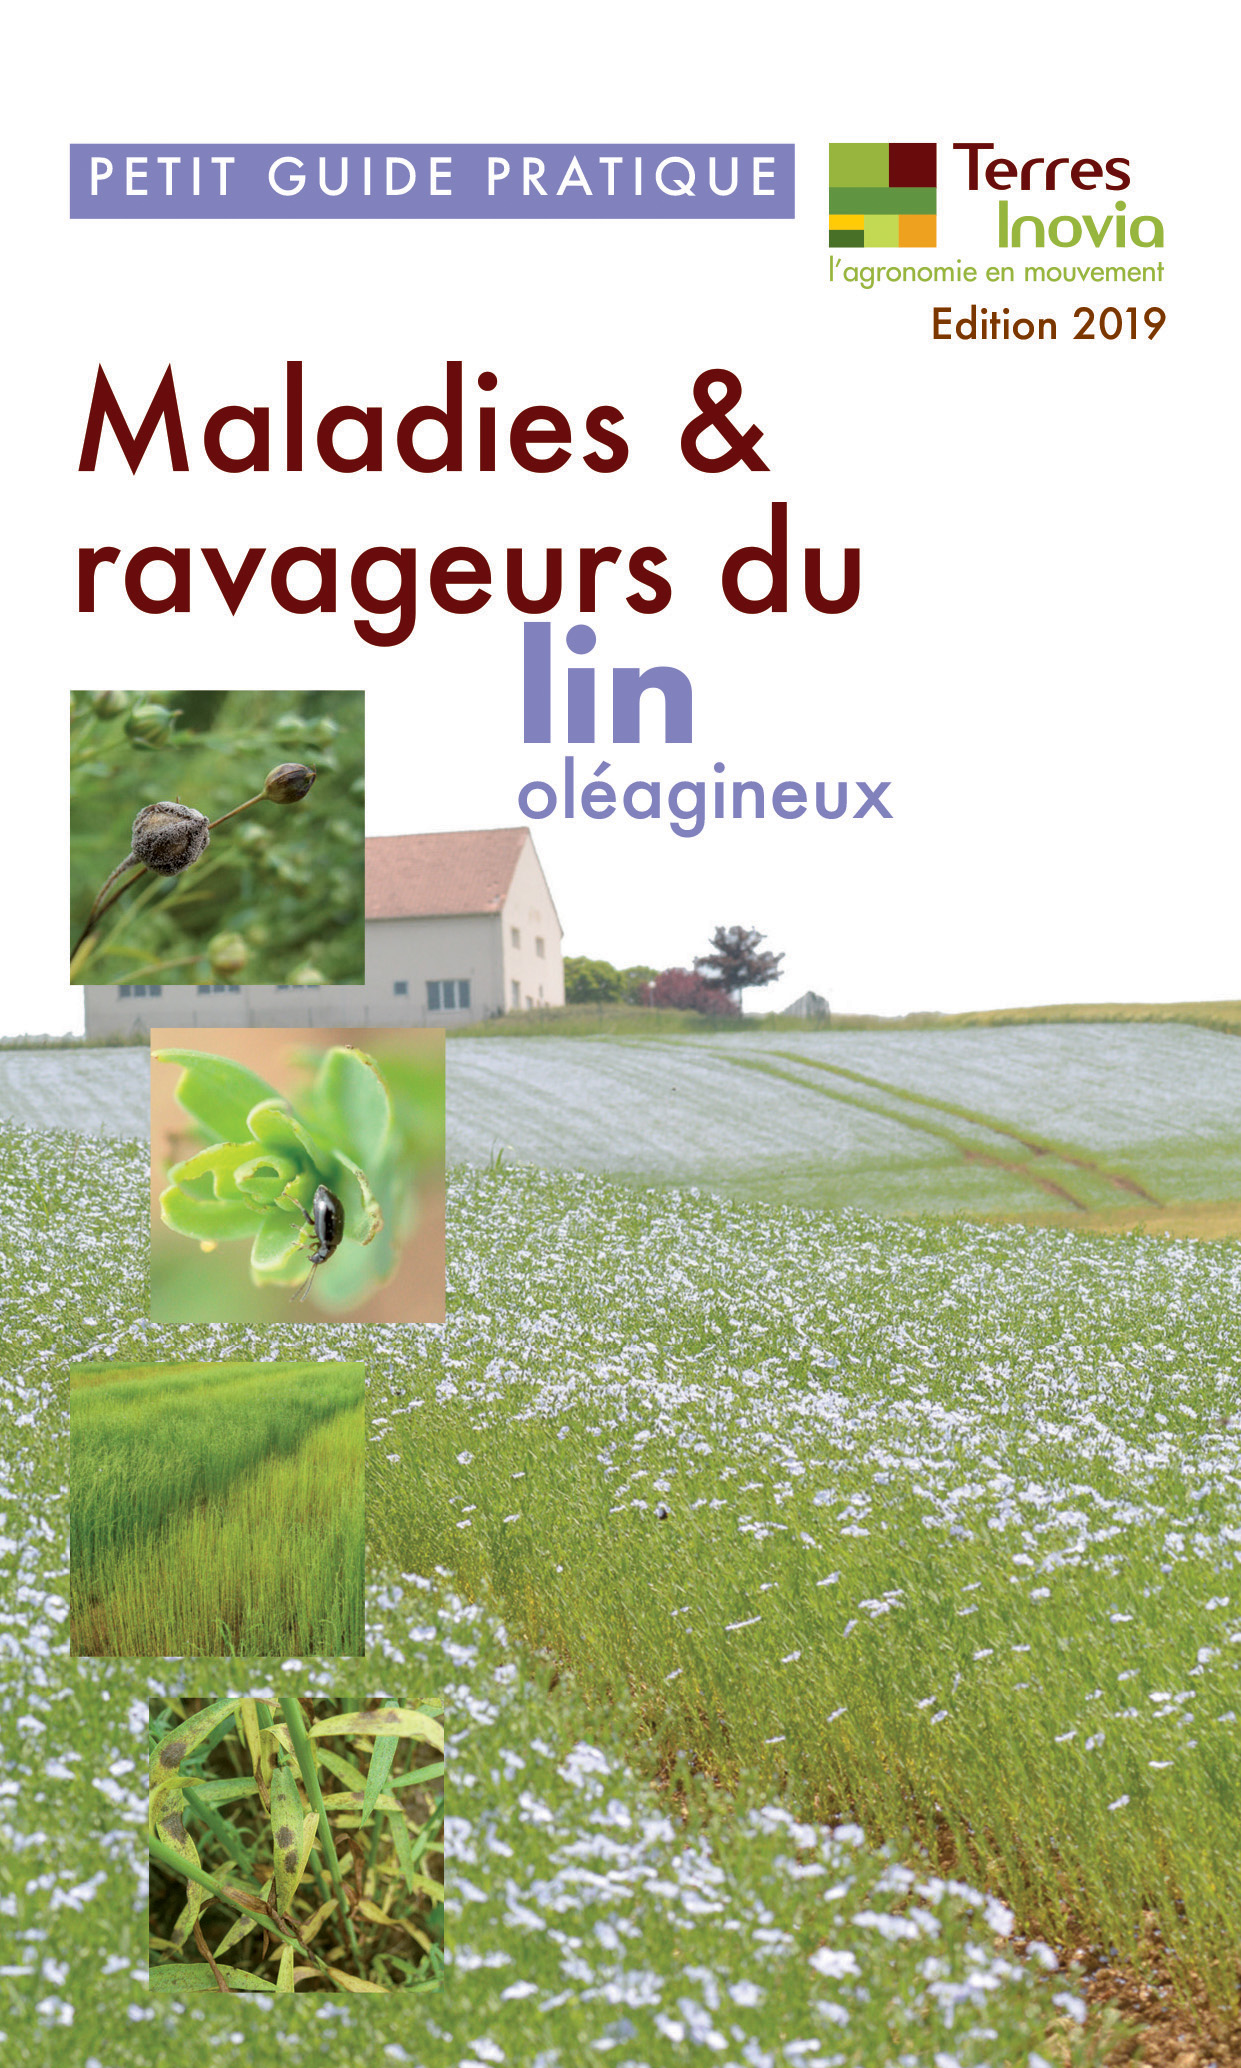 Guide pratique Terres Inovia : maladies & ravageurs du lin oléagineux